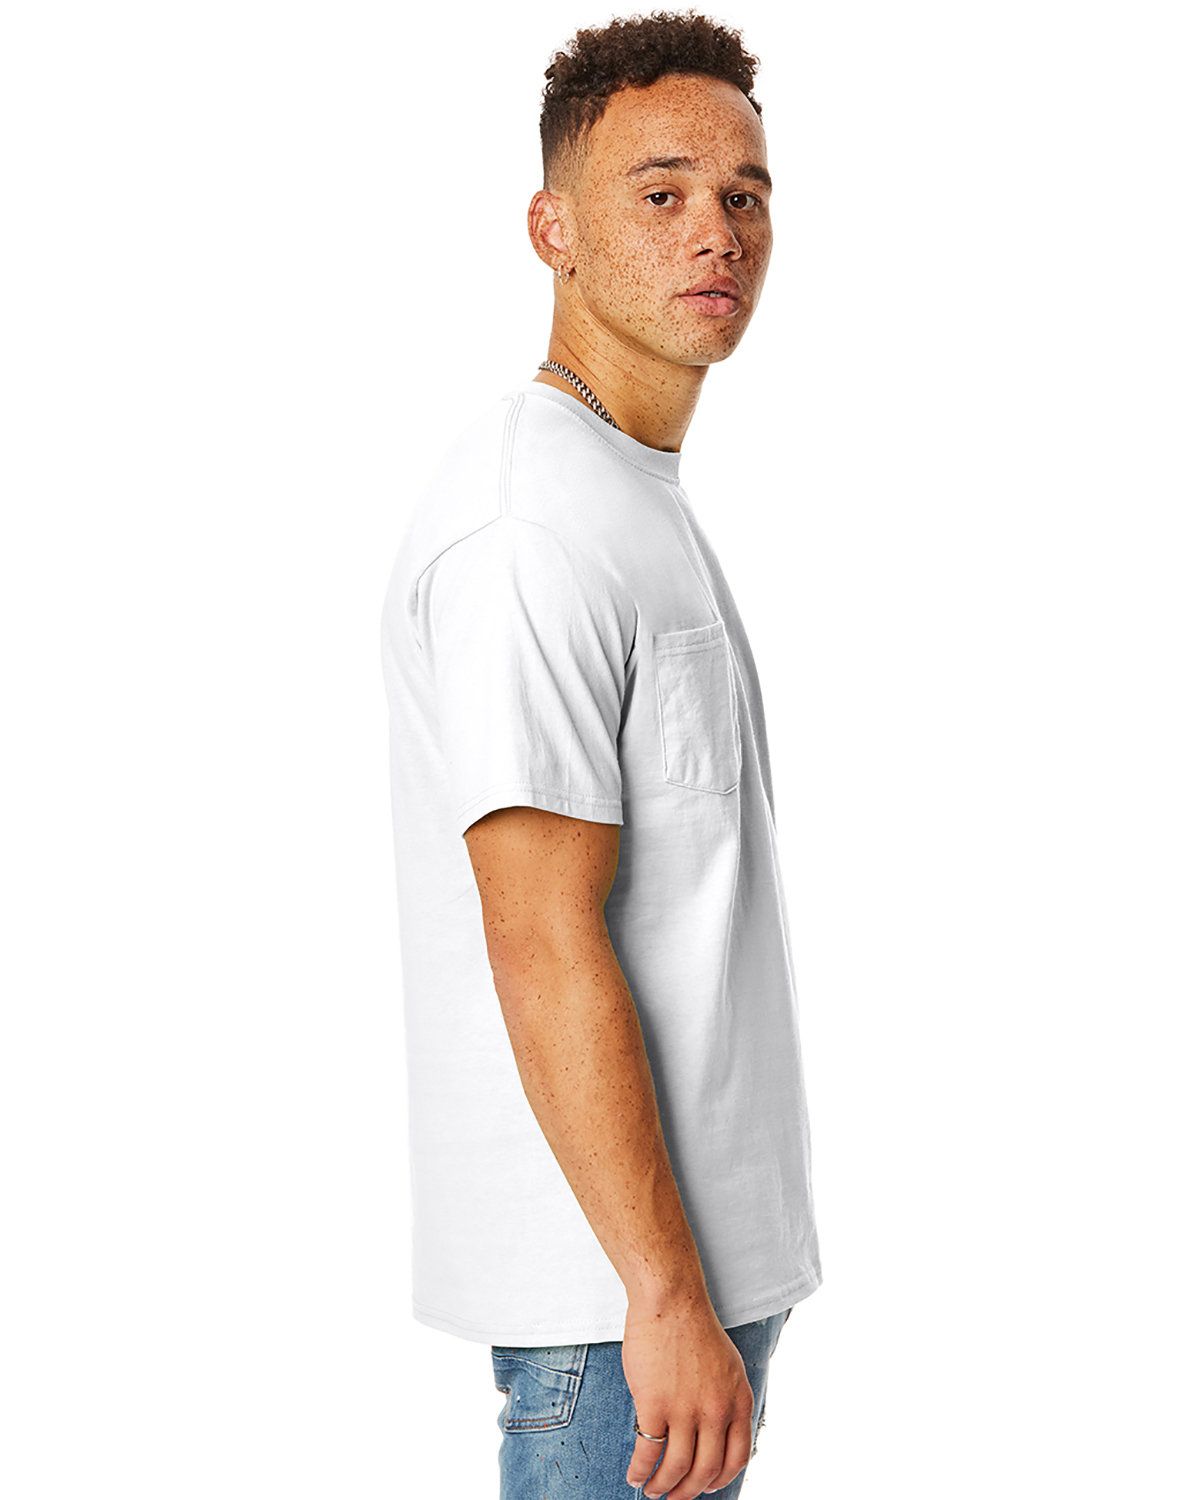 'Hanes H5590 Men's Tagless Pocket T-Shirt'